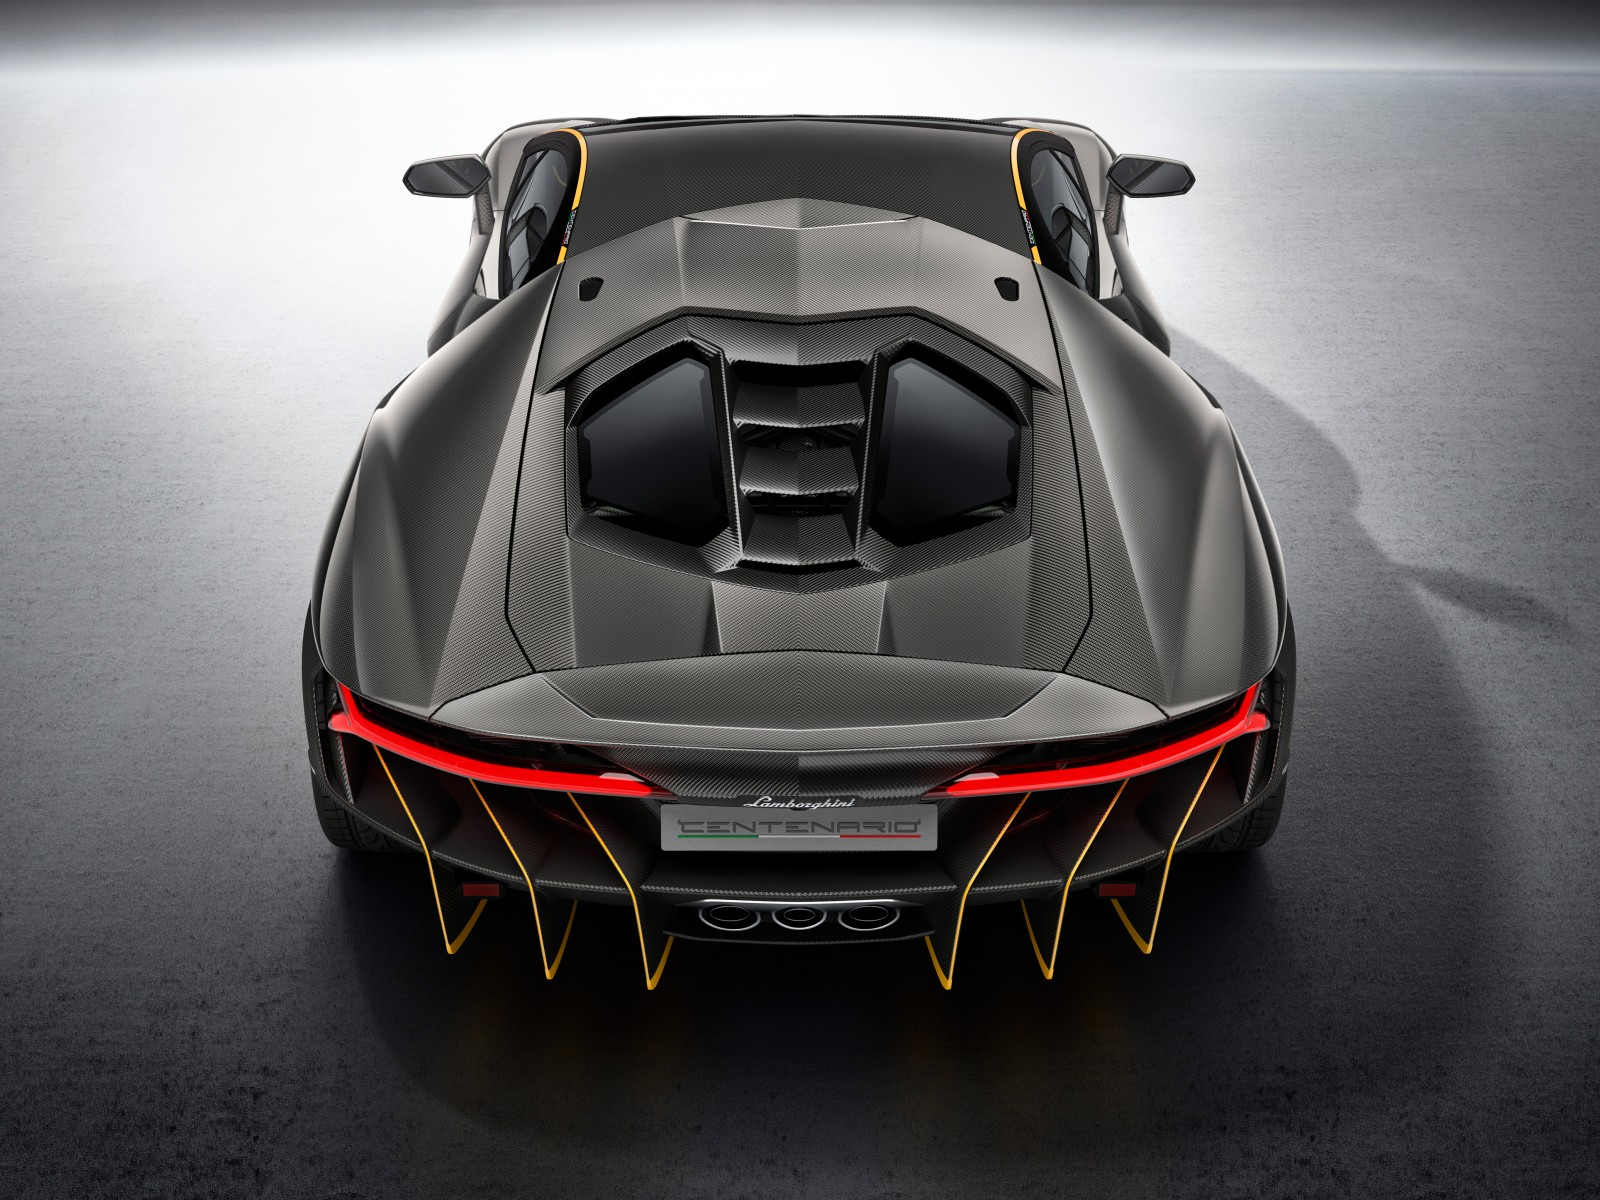 2016 Lamborghini Centenario, вид сзади 1600x1200